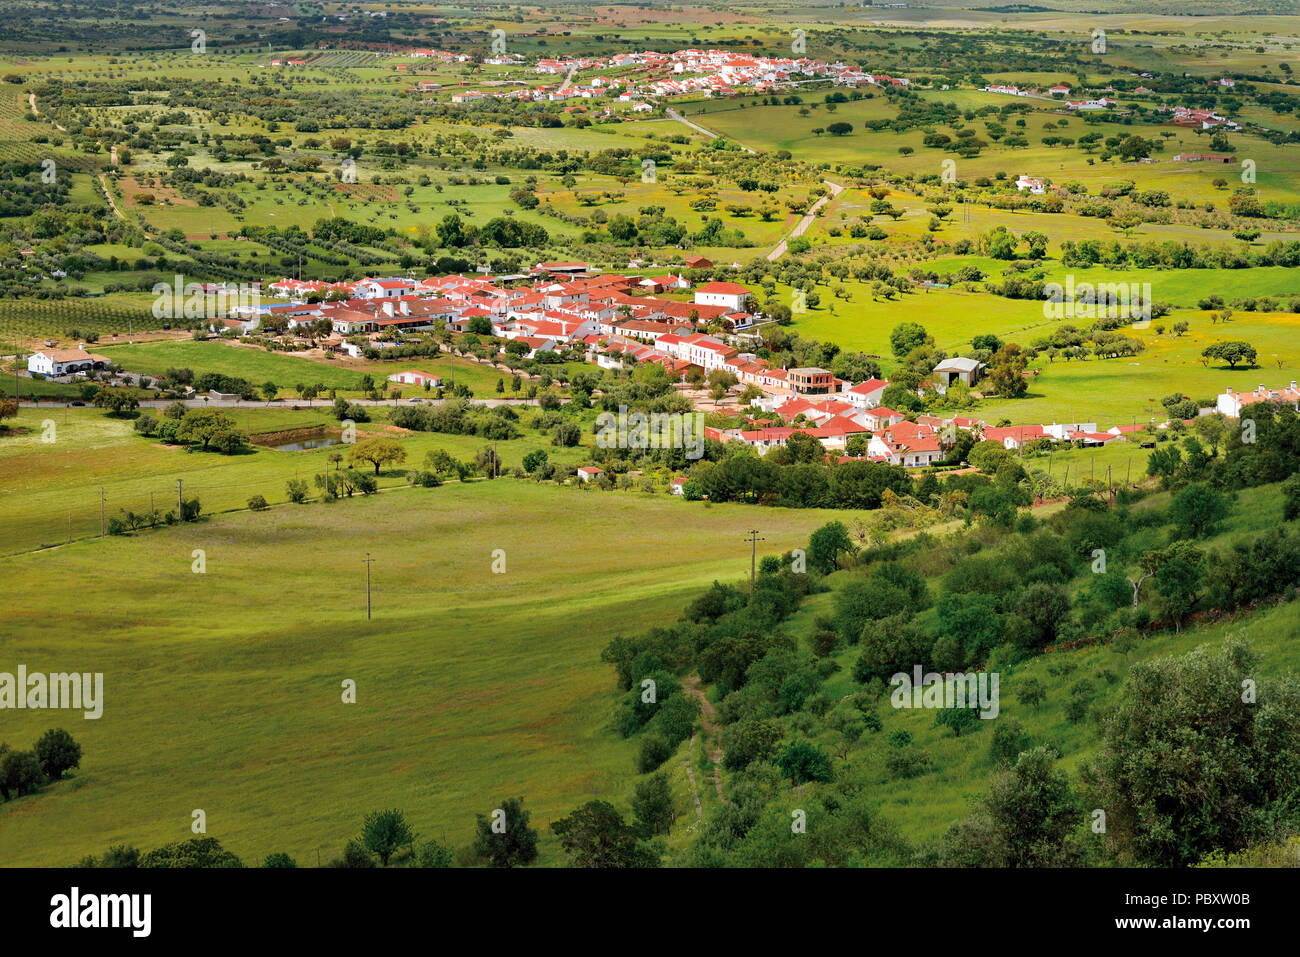 Ver a dos pueblos en medio de un amplio paisaje verde y plana Foto de stock